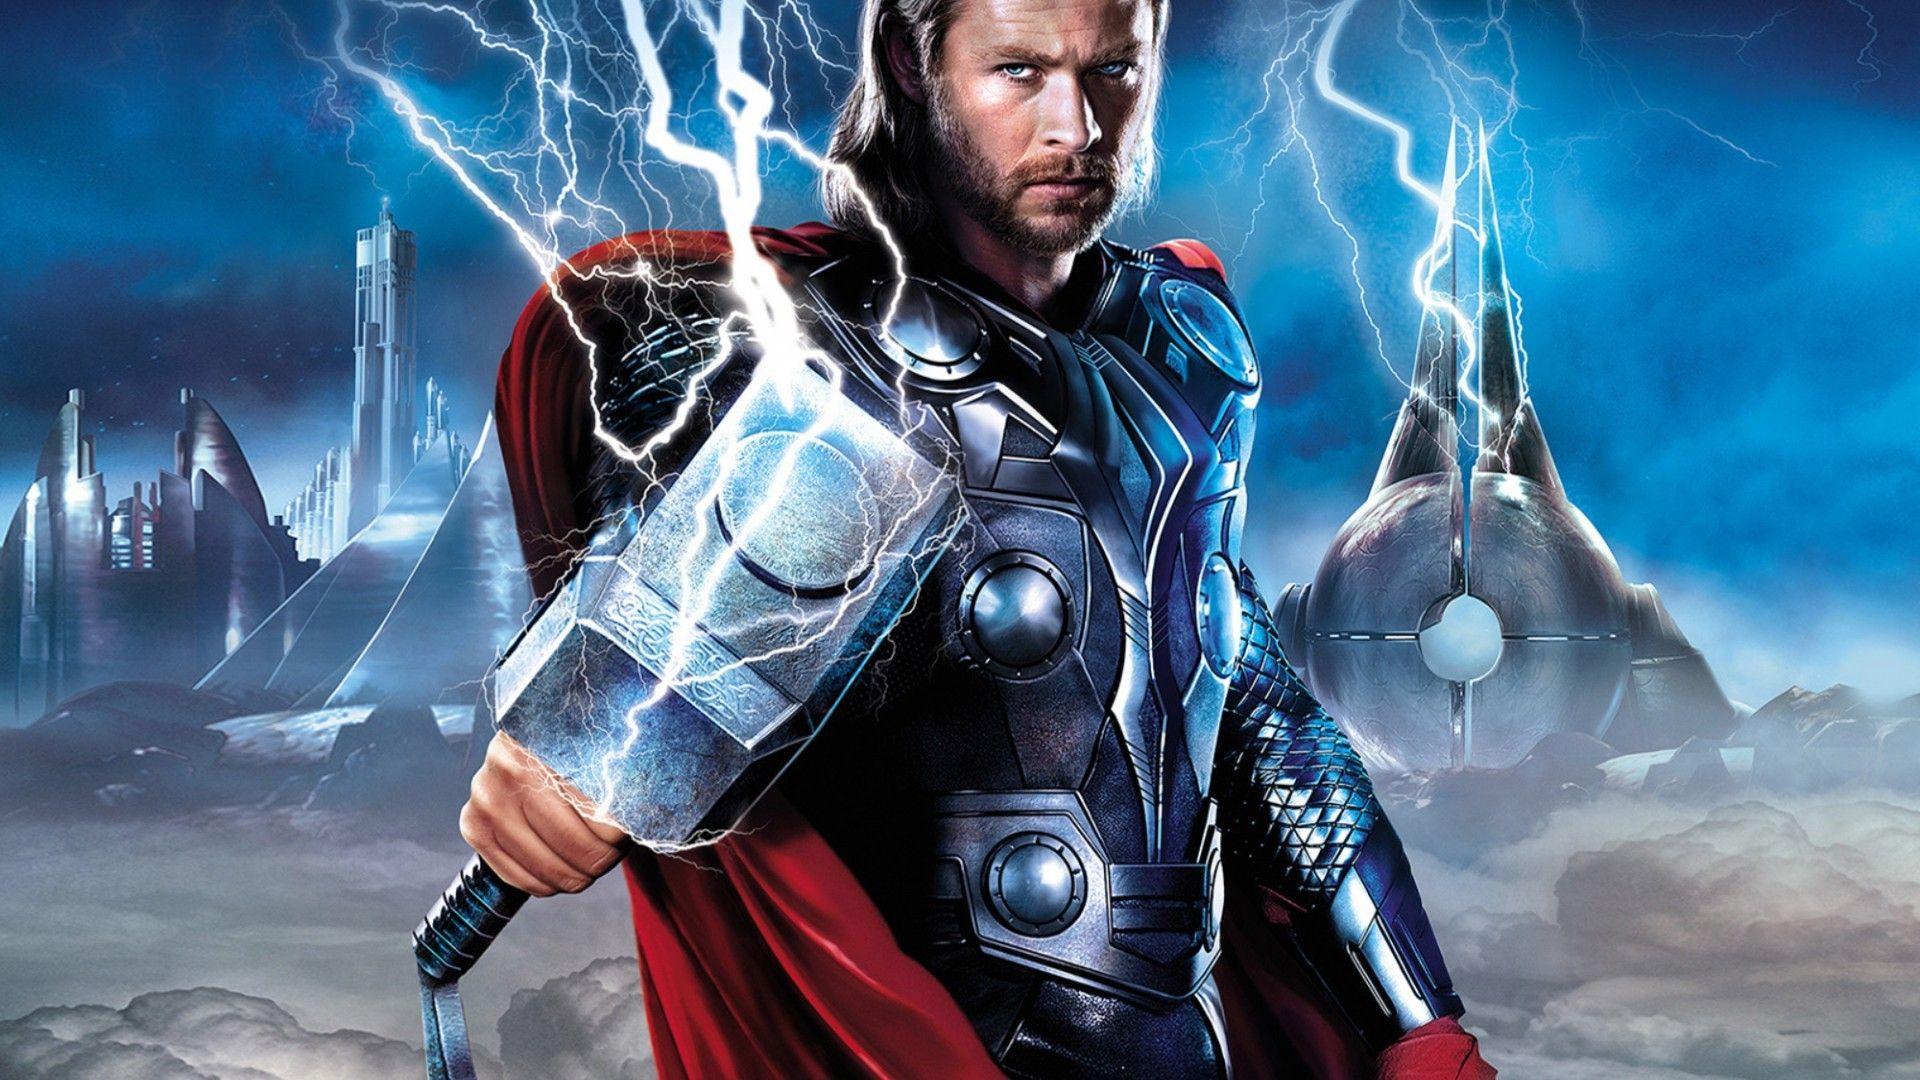 Thor Hammer Avengers